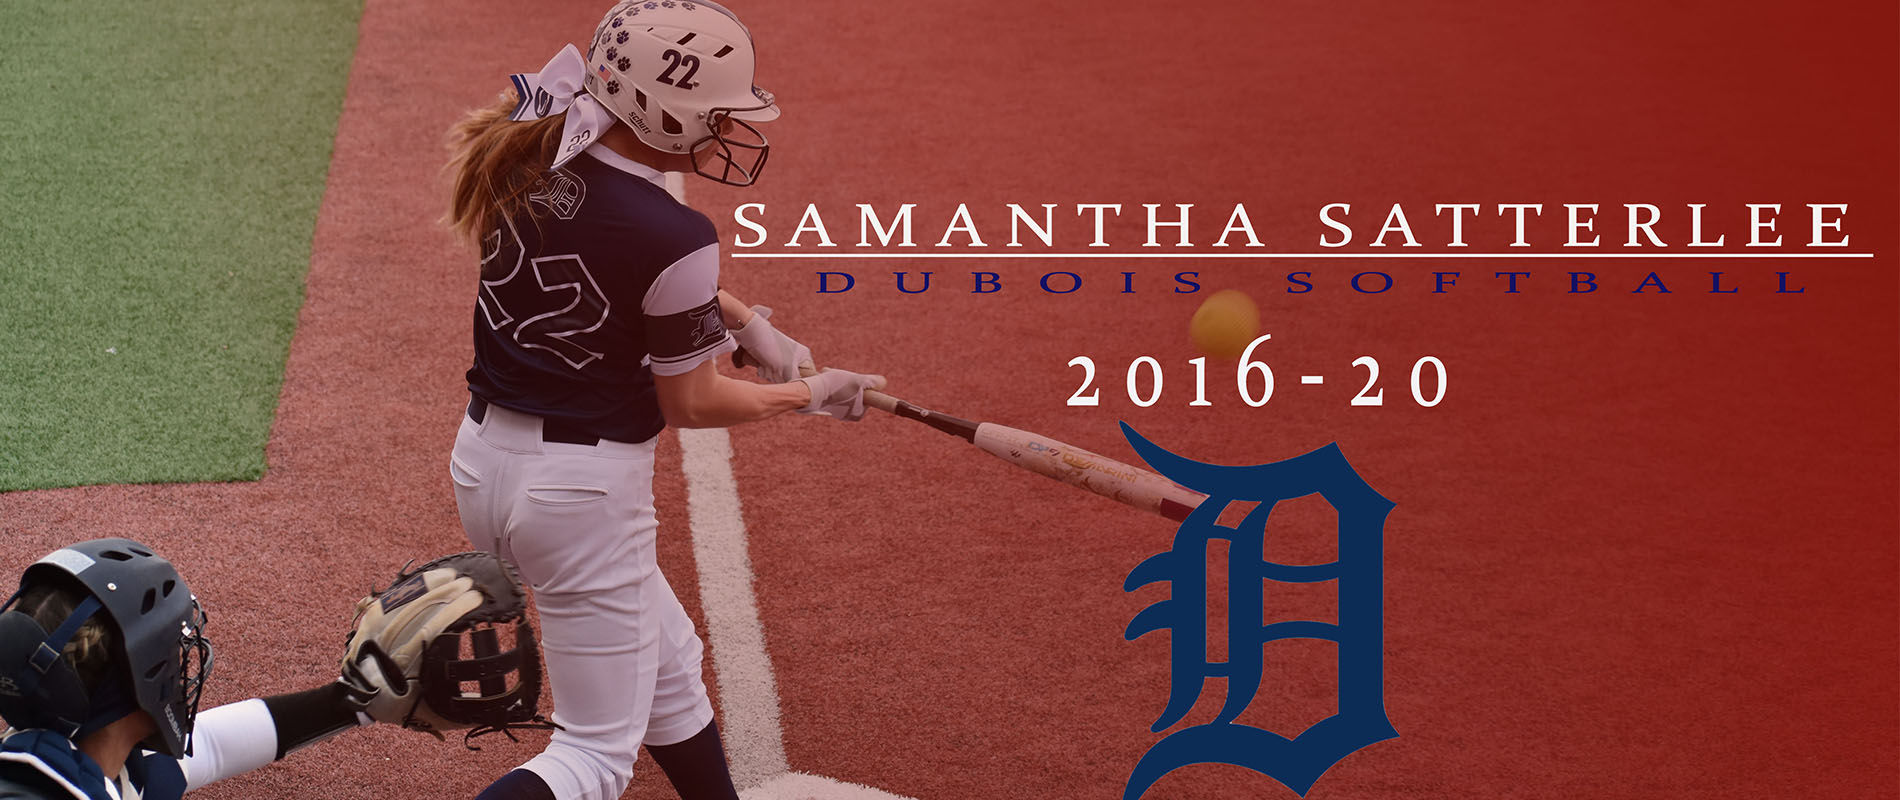 Penn State DuBois' Samantha Satterlee.